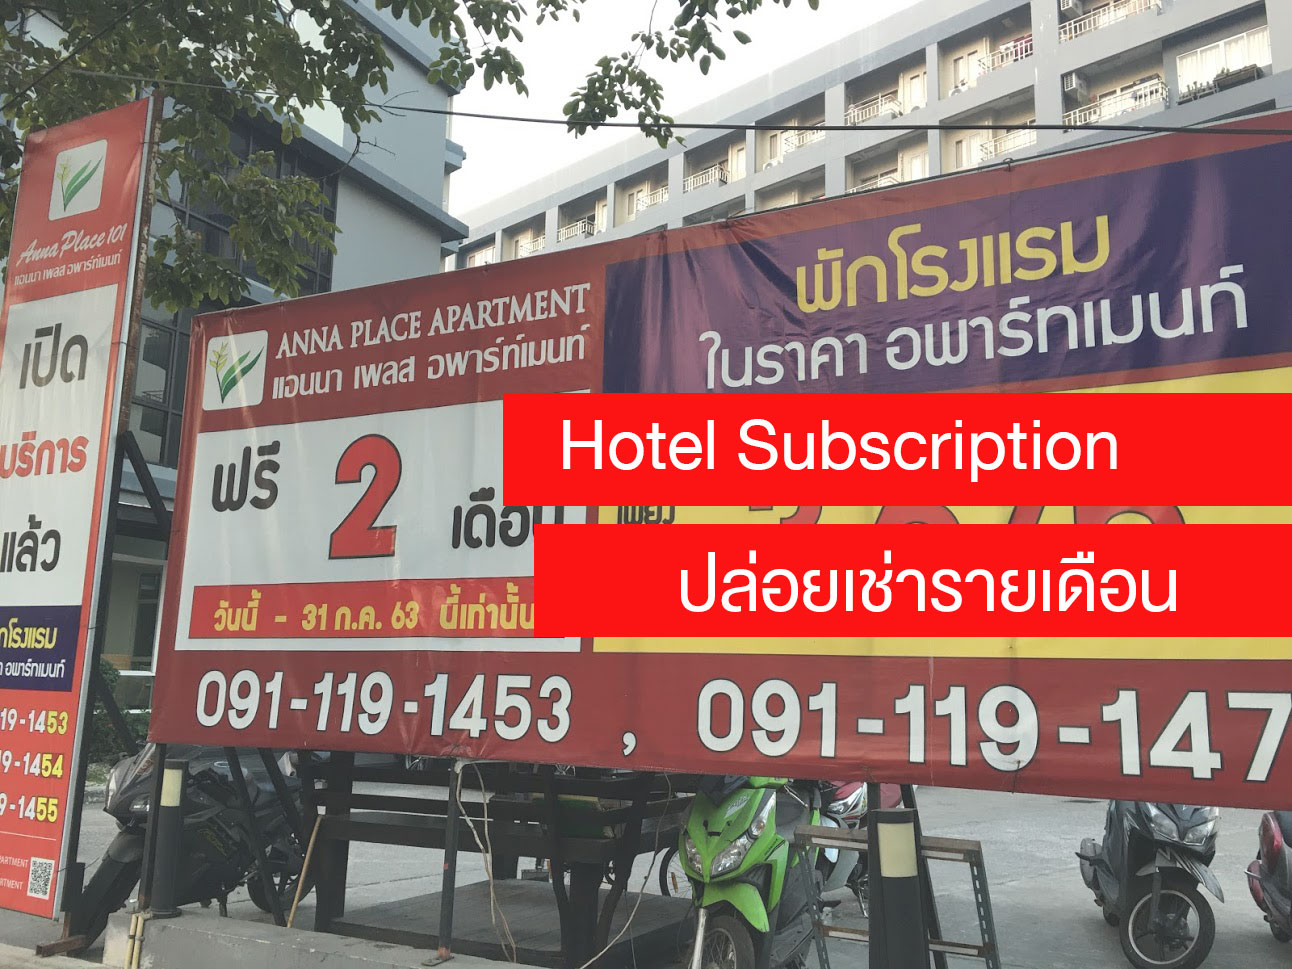 เก็บ Case Study แถวบ้าน Hotel Subscription โรงแรมปล่อยเช่ารายเดือน ทางออกของธุรกิจ